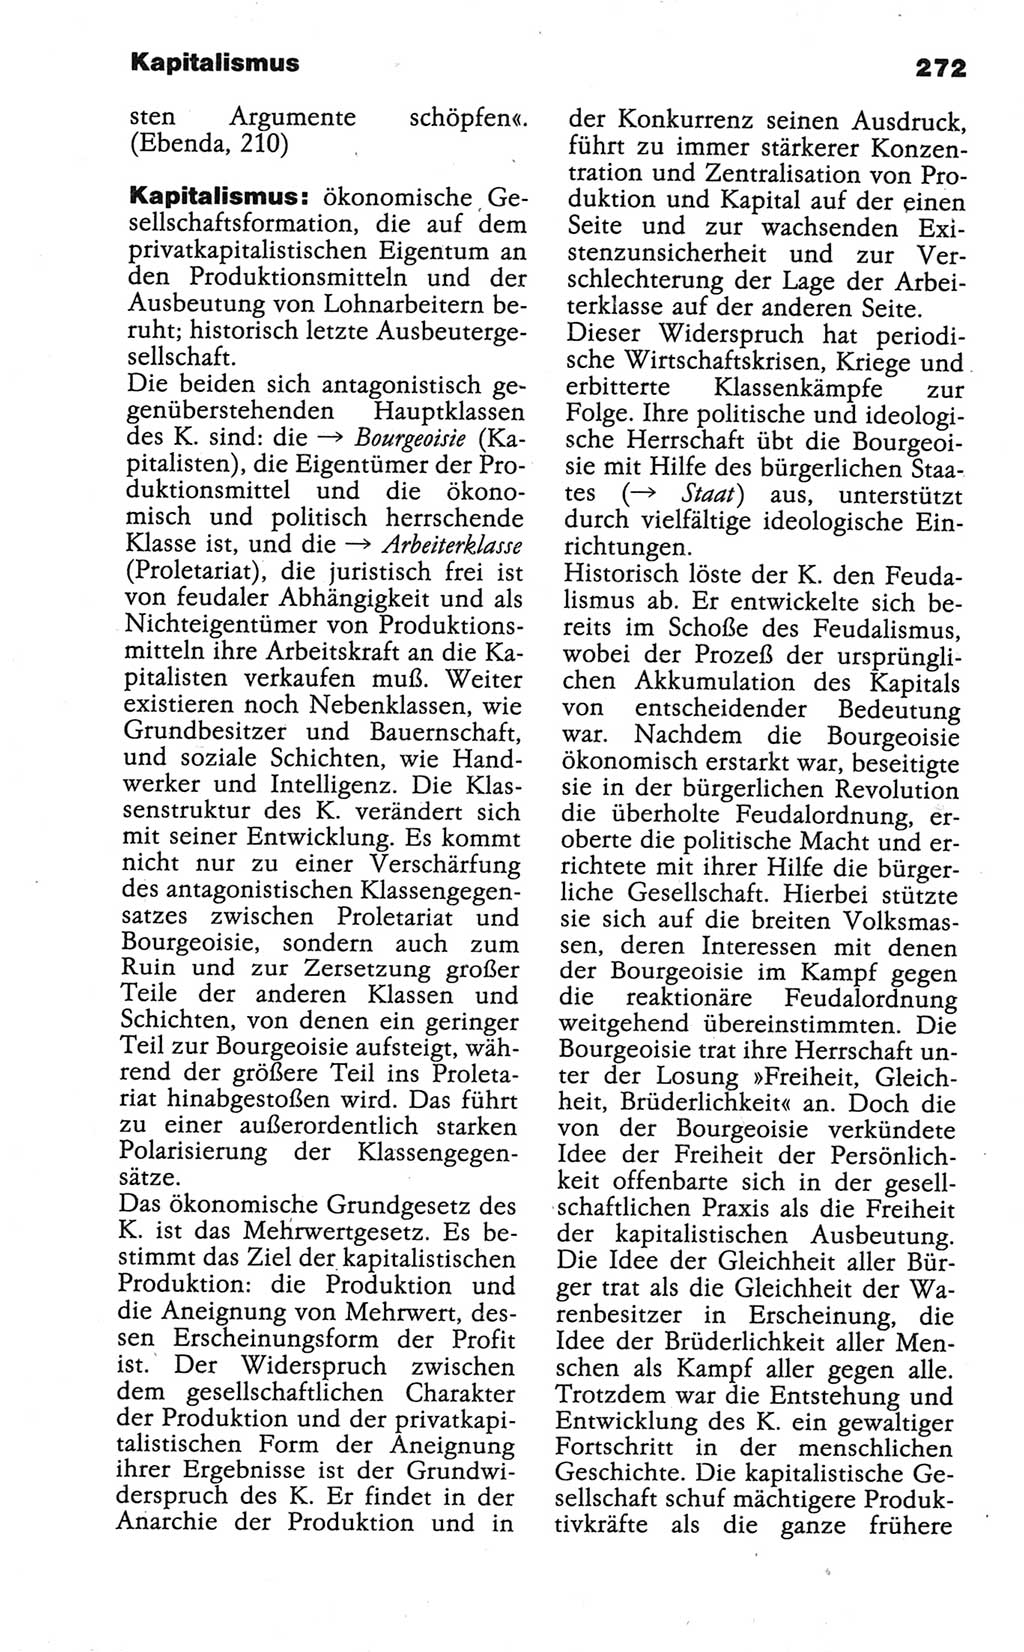 Wörterbuch der marxistisch-leninistischen Philosophie [Deutsche Demokratische Republik (DDR)] 1986, Seite 272 (Wb. ML Phil. DDR 1986, S. 272)